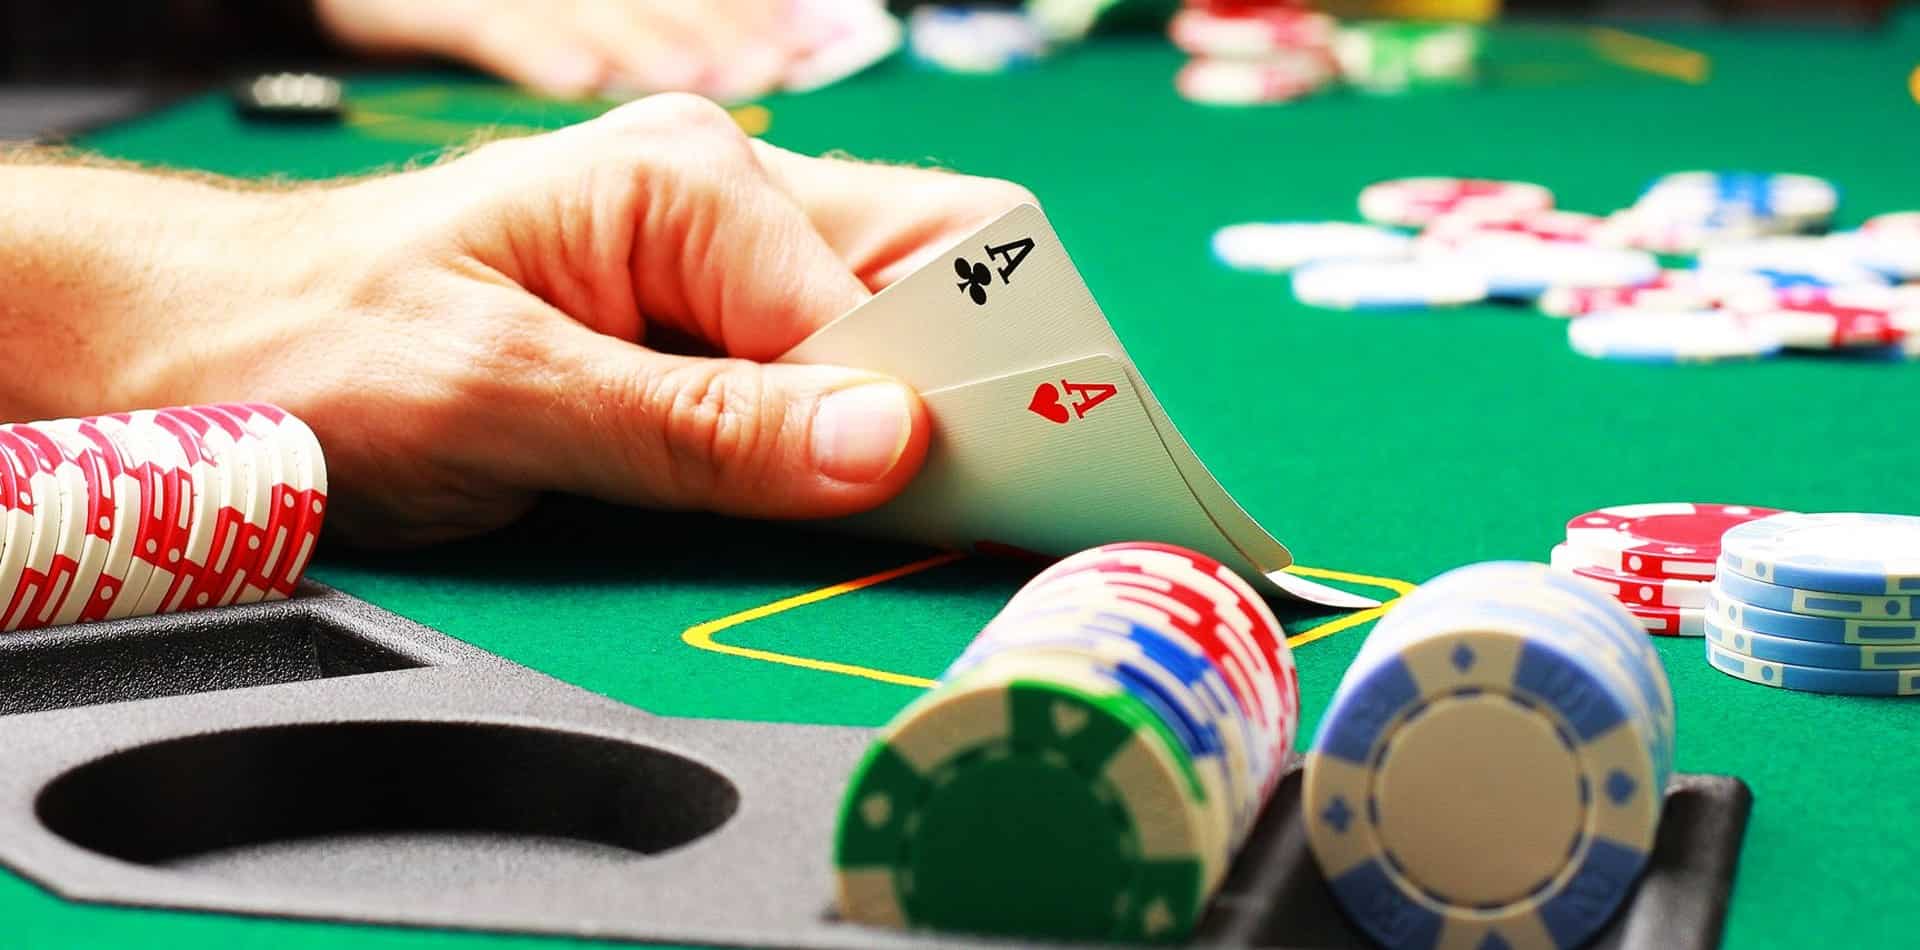 Chơi poker trực tuyến – Bài học từ người chơi chuyên nghiệp